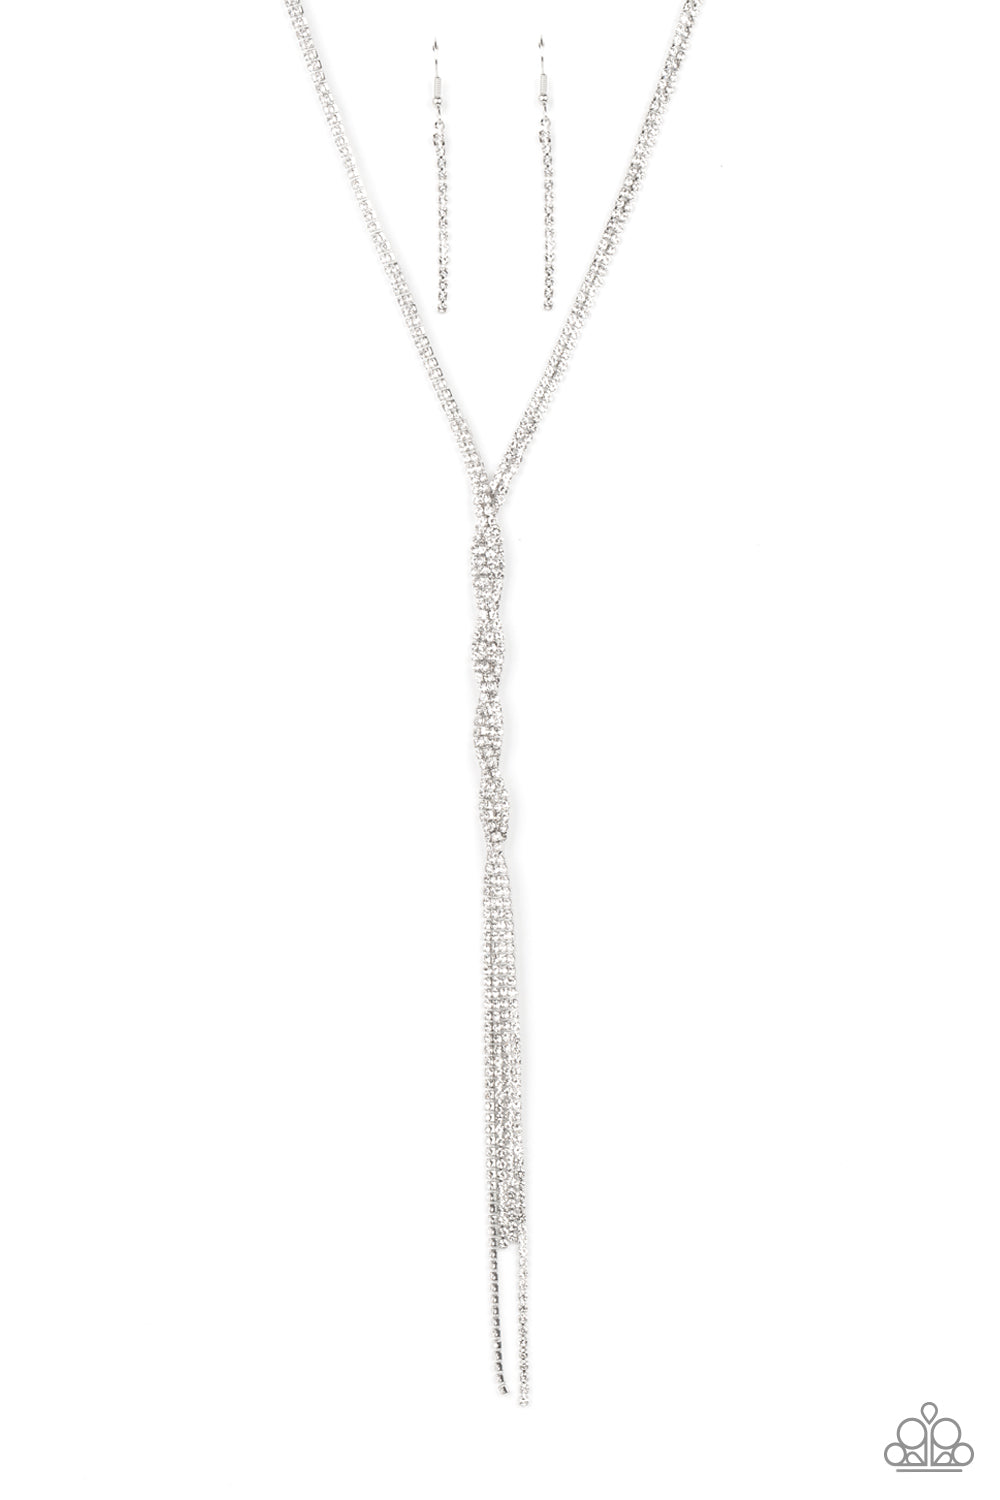 Impressively Icy - White (Rhinestone) Necklace